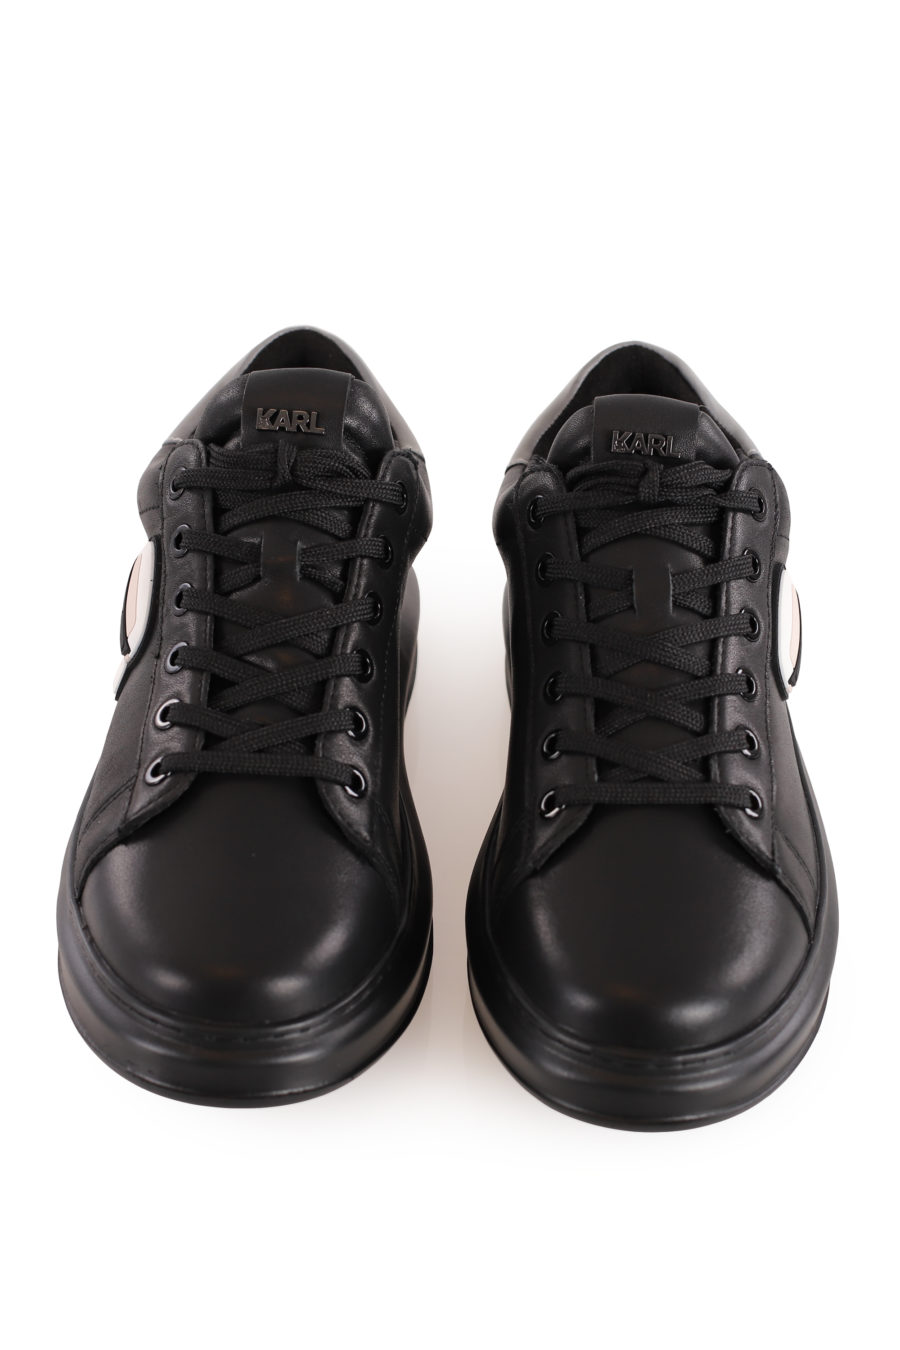 Zapatillas negras con logotipo 3D "Karl" - b51fb18d28d18a7af017a6ea3dcbb9360259994a